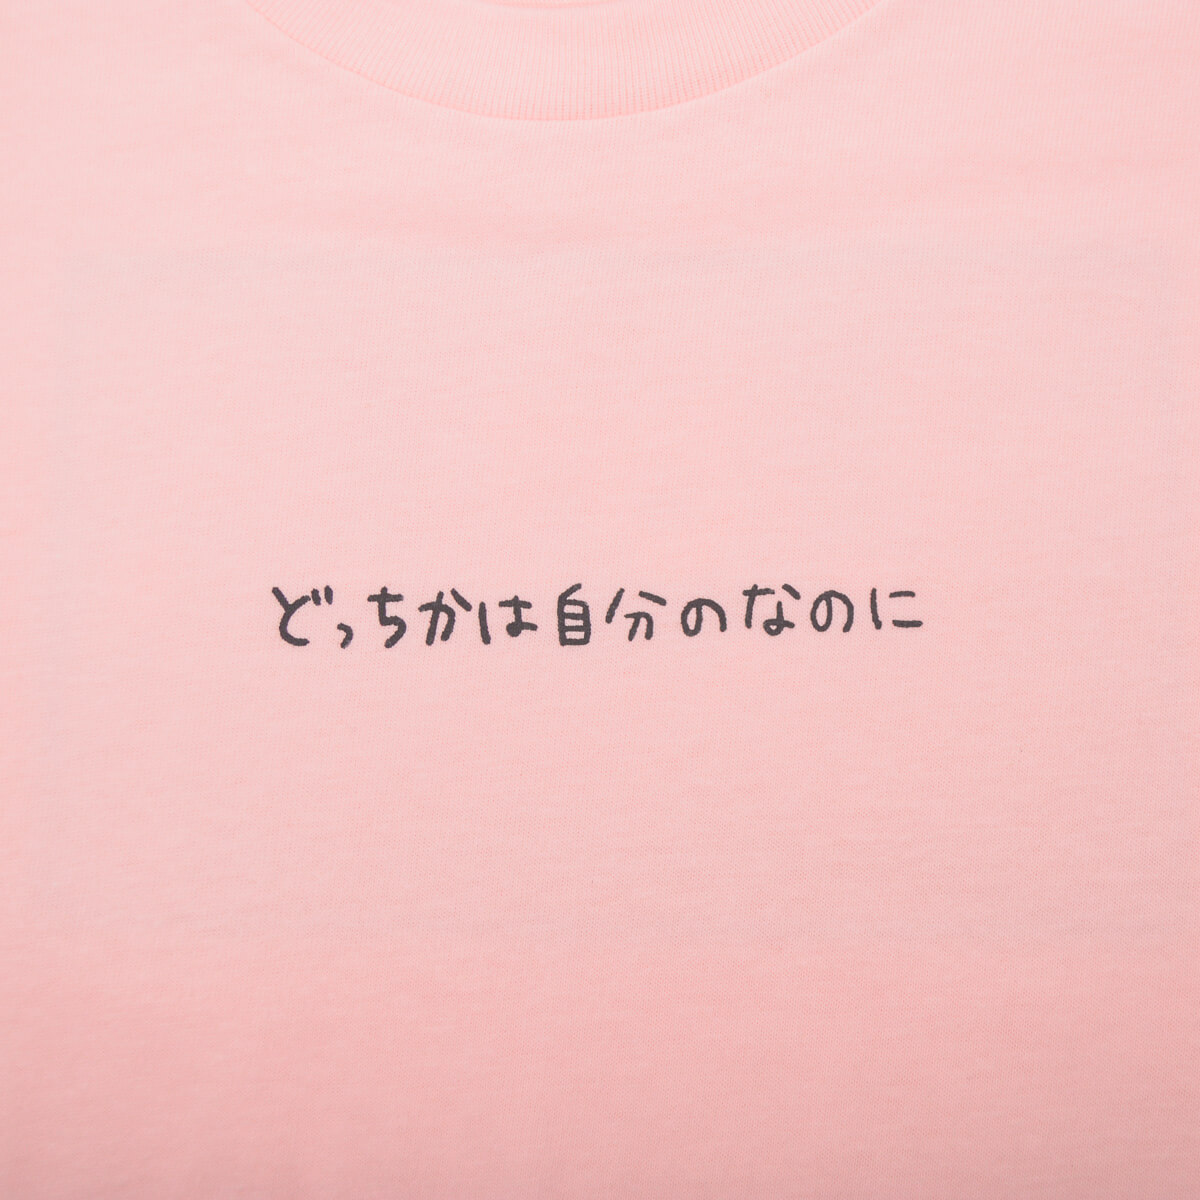 Tシャツ「ちこまる」残念なちこまる/ベビーピンク